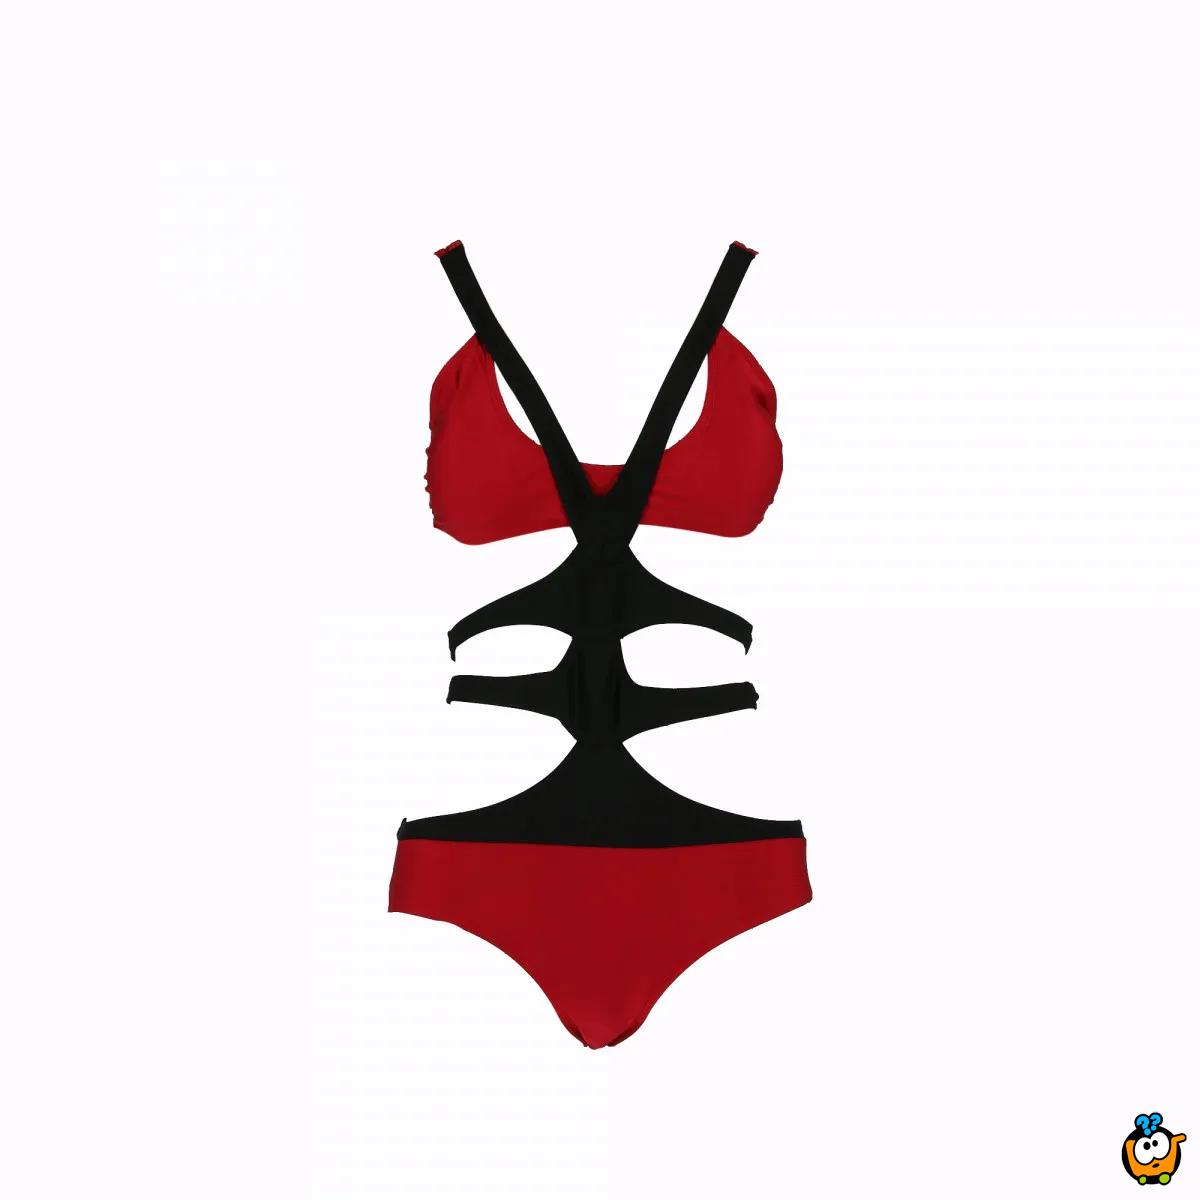 Jednodelni ženski kupaći kostim - TRIO B